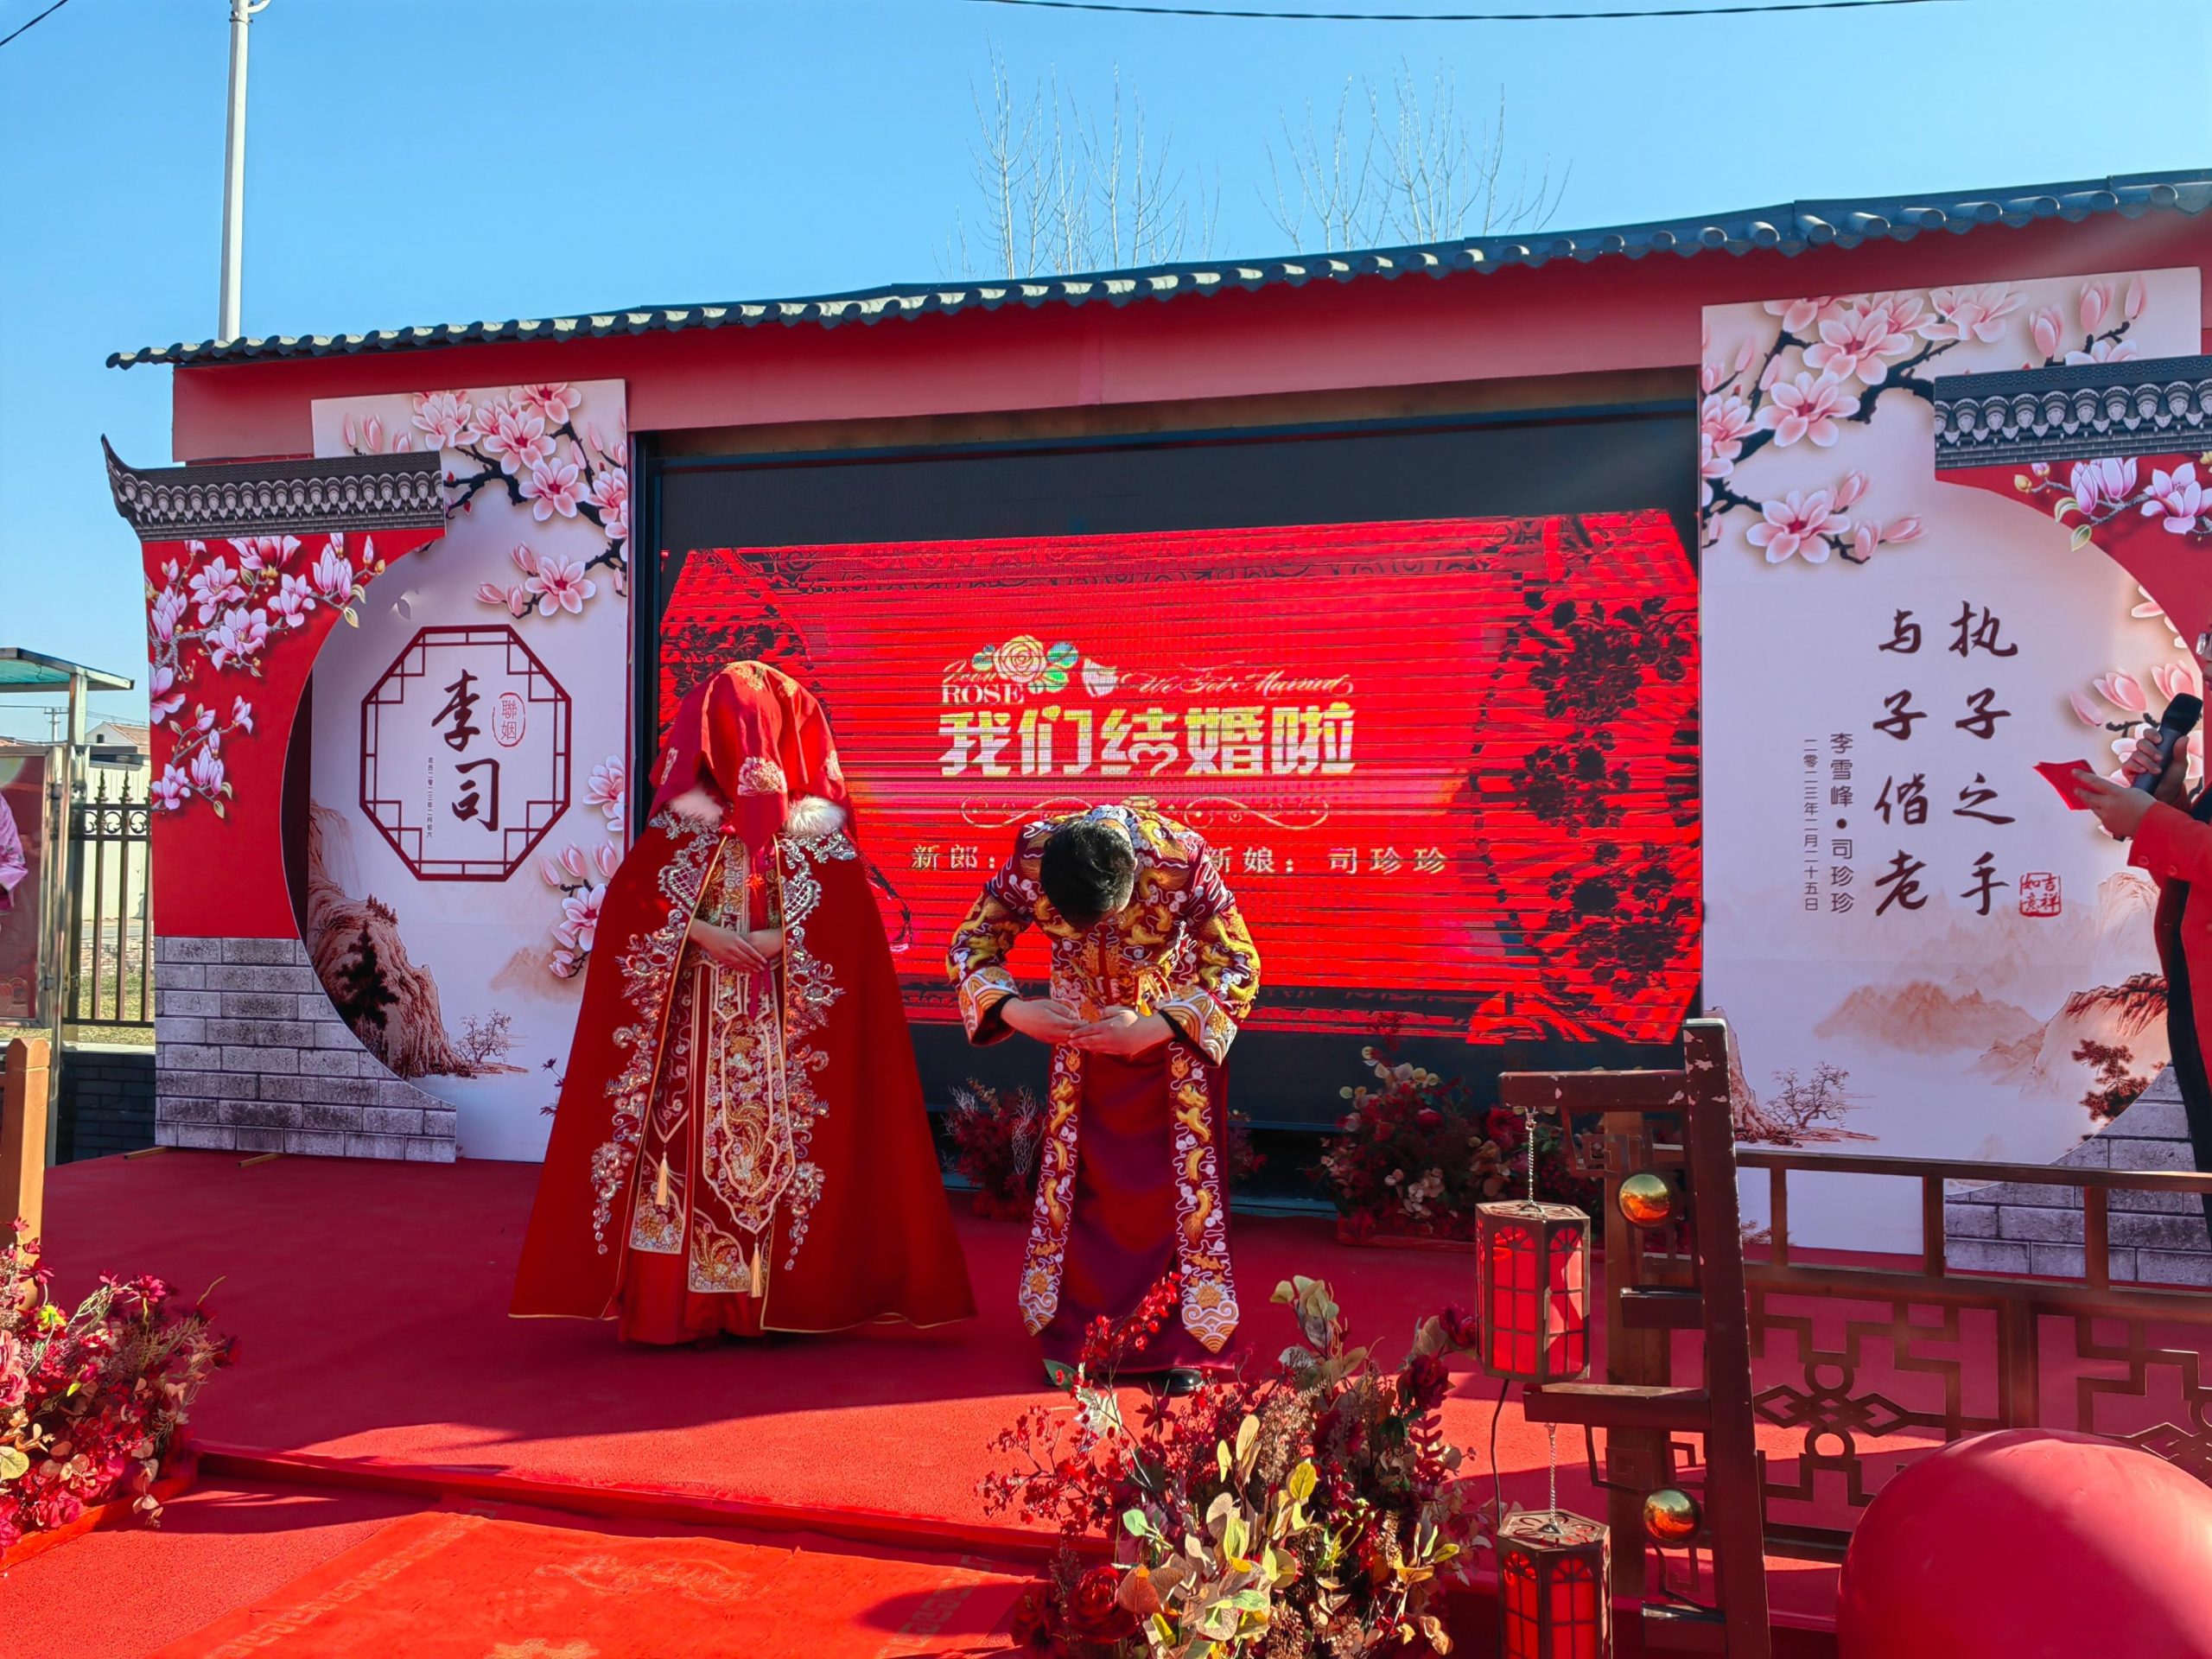 阳信县劳店镇一场中式婚礼走红 县市民政领导亲自证婚并颁发荣誉证书